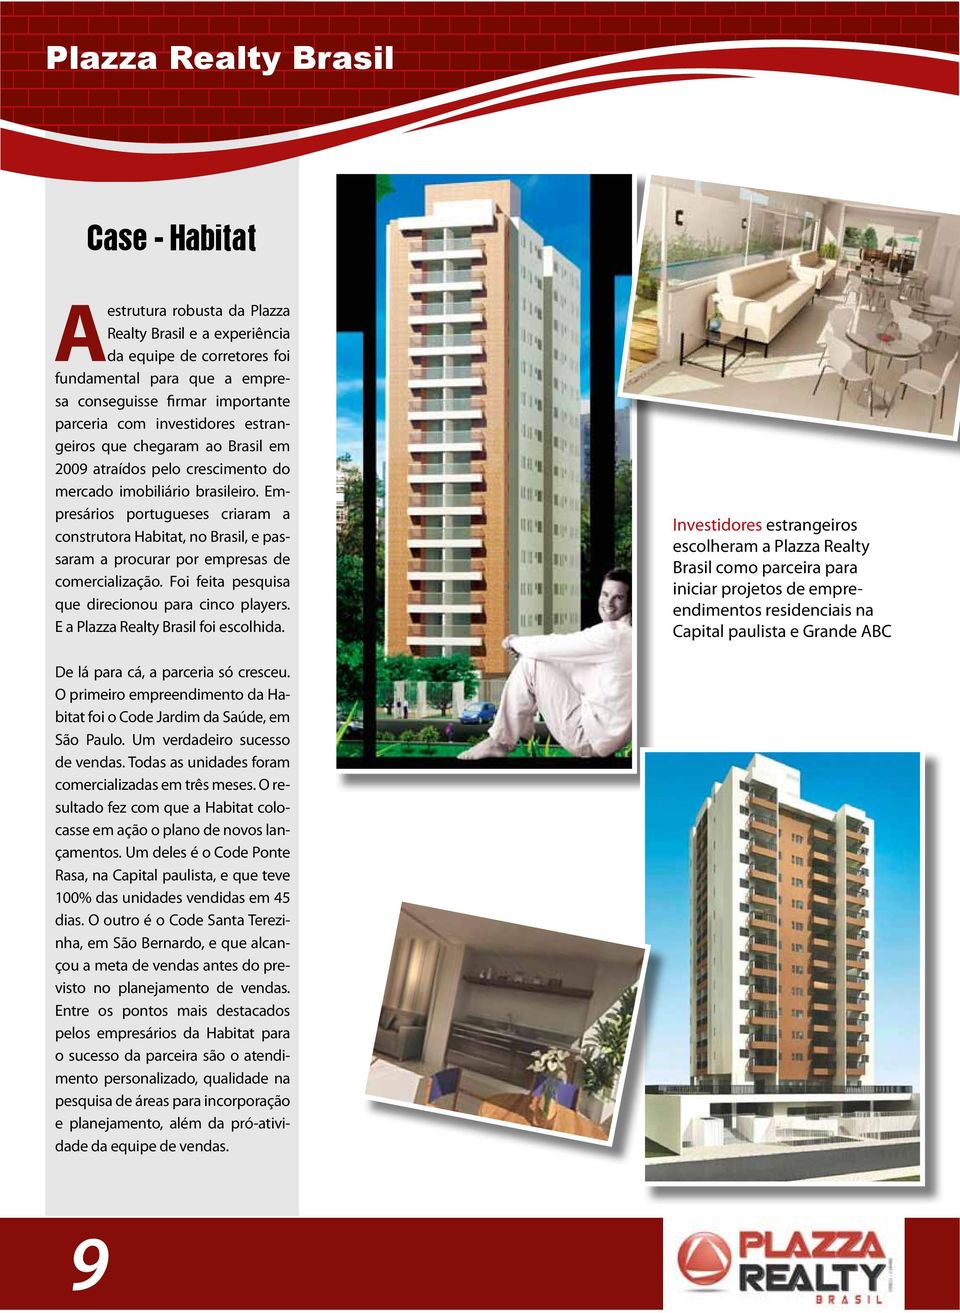 Empresários portugueses criaram a construtora Habitat, no Brasil, e passaram a procurar por empresas de comercialização. Foi feita pesquisa que direcionou para cinco players.